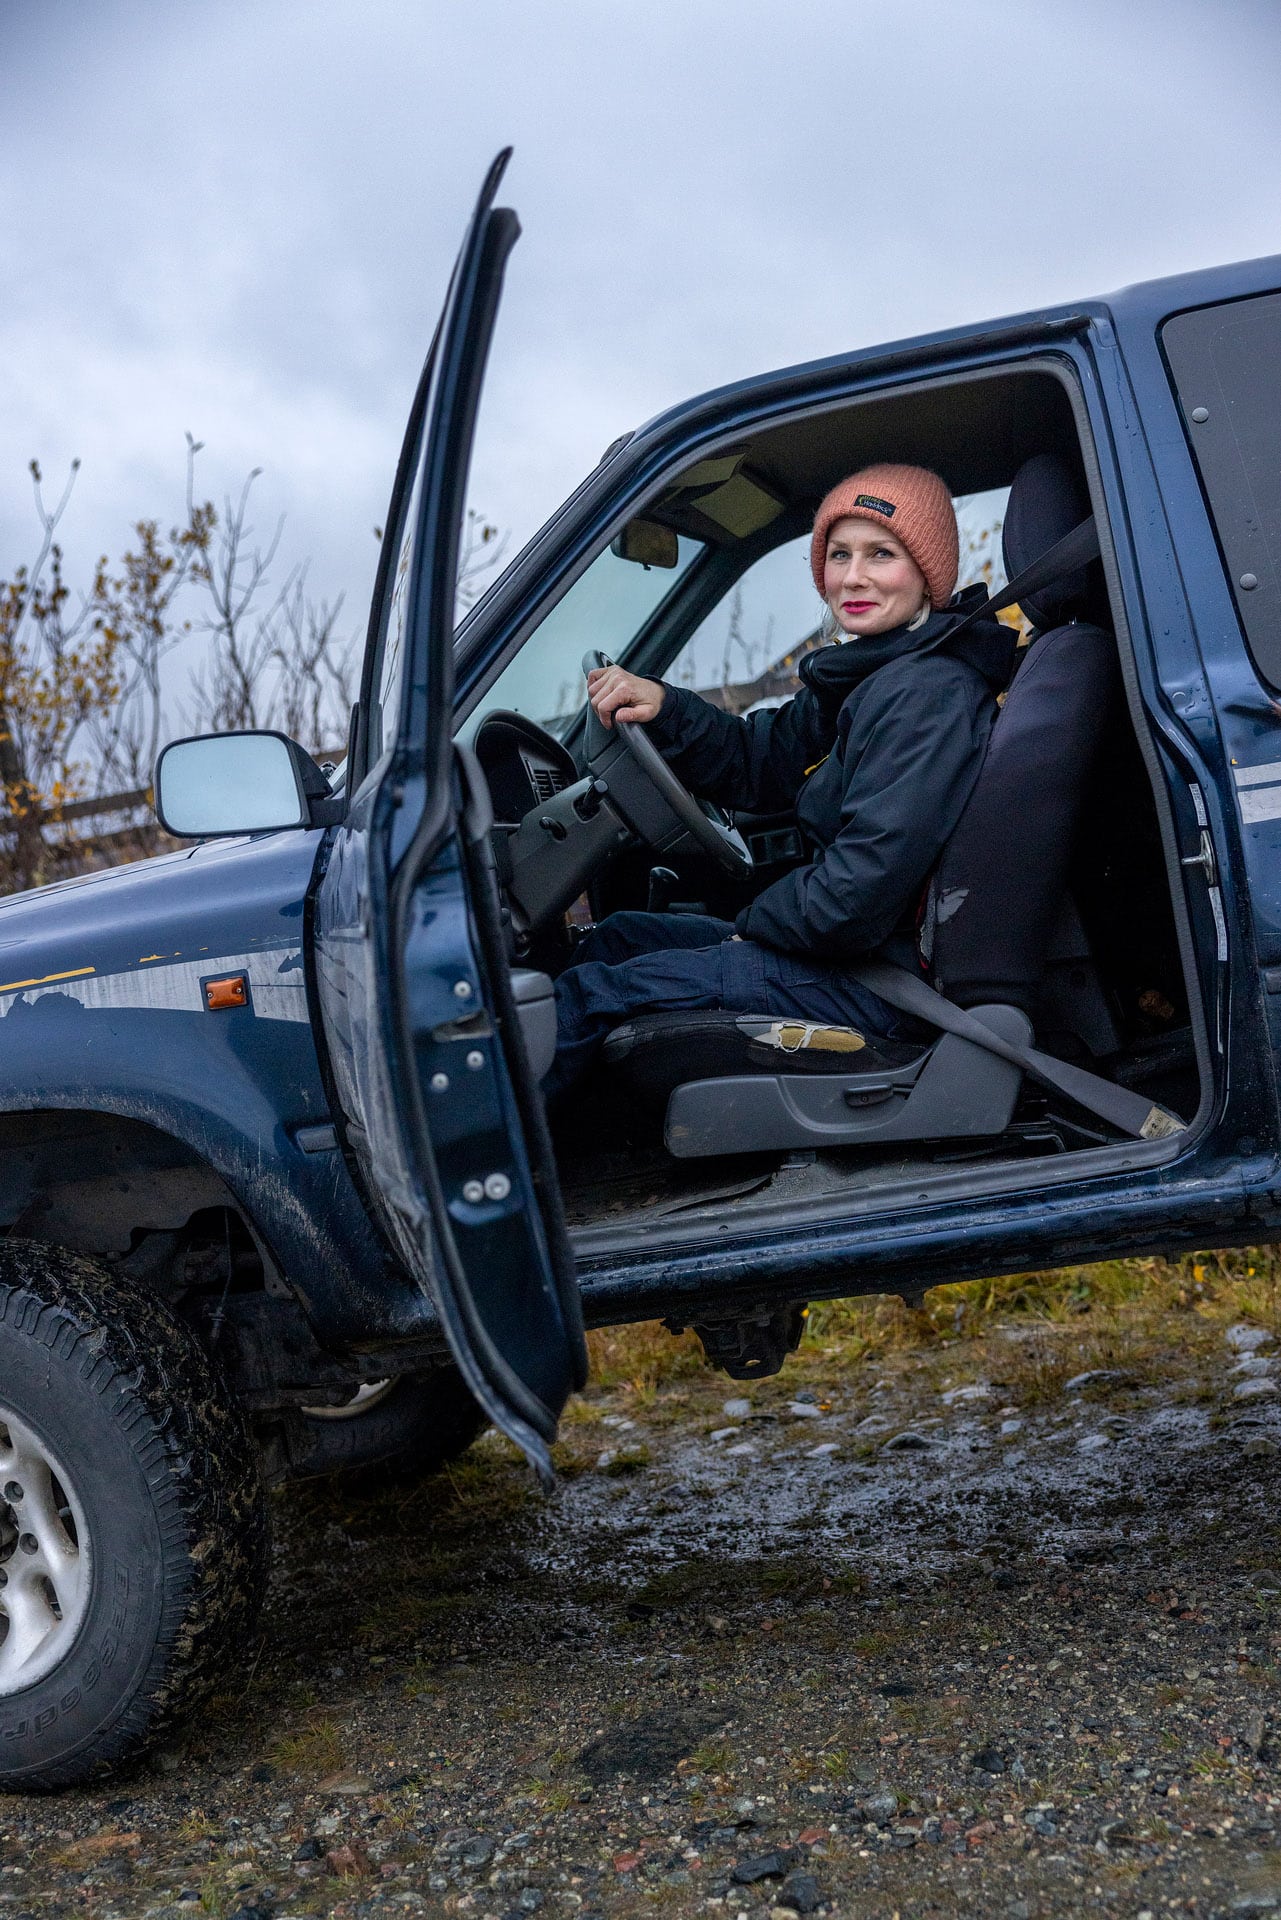 
Hilde Wara er ny sjeflege i Stiftelsen Norsk Luftambulanse. Her kjører hun en av familiens to biler i nærområdet ved familiens hus.